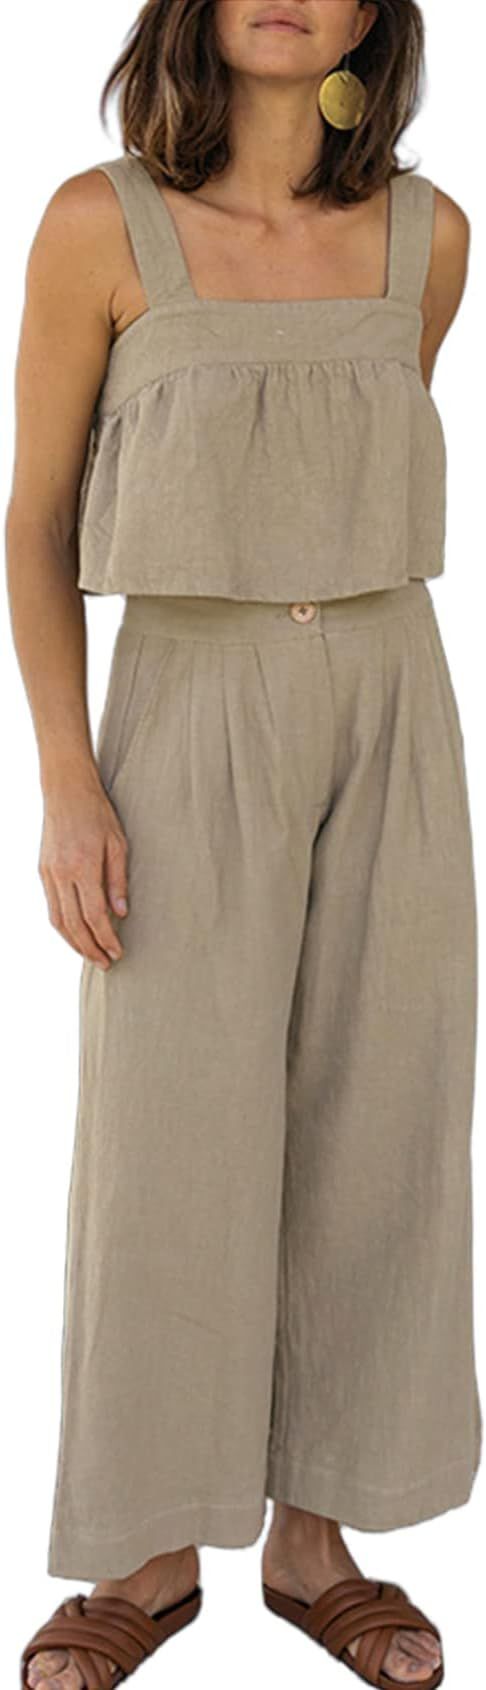 GIVNUAN Women's Summer 2 Piece Outfits Linen Sets Sleeveless Crop Tank Top Wide Leg Pants Romper ... | Amazon (US)